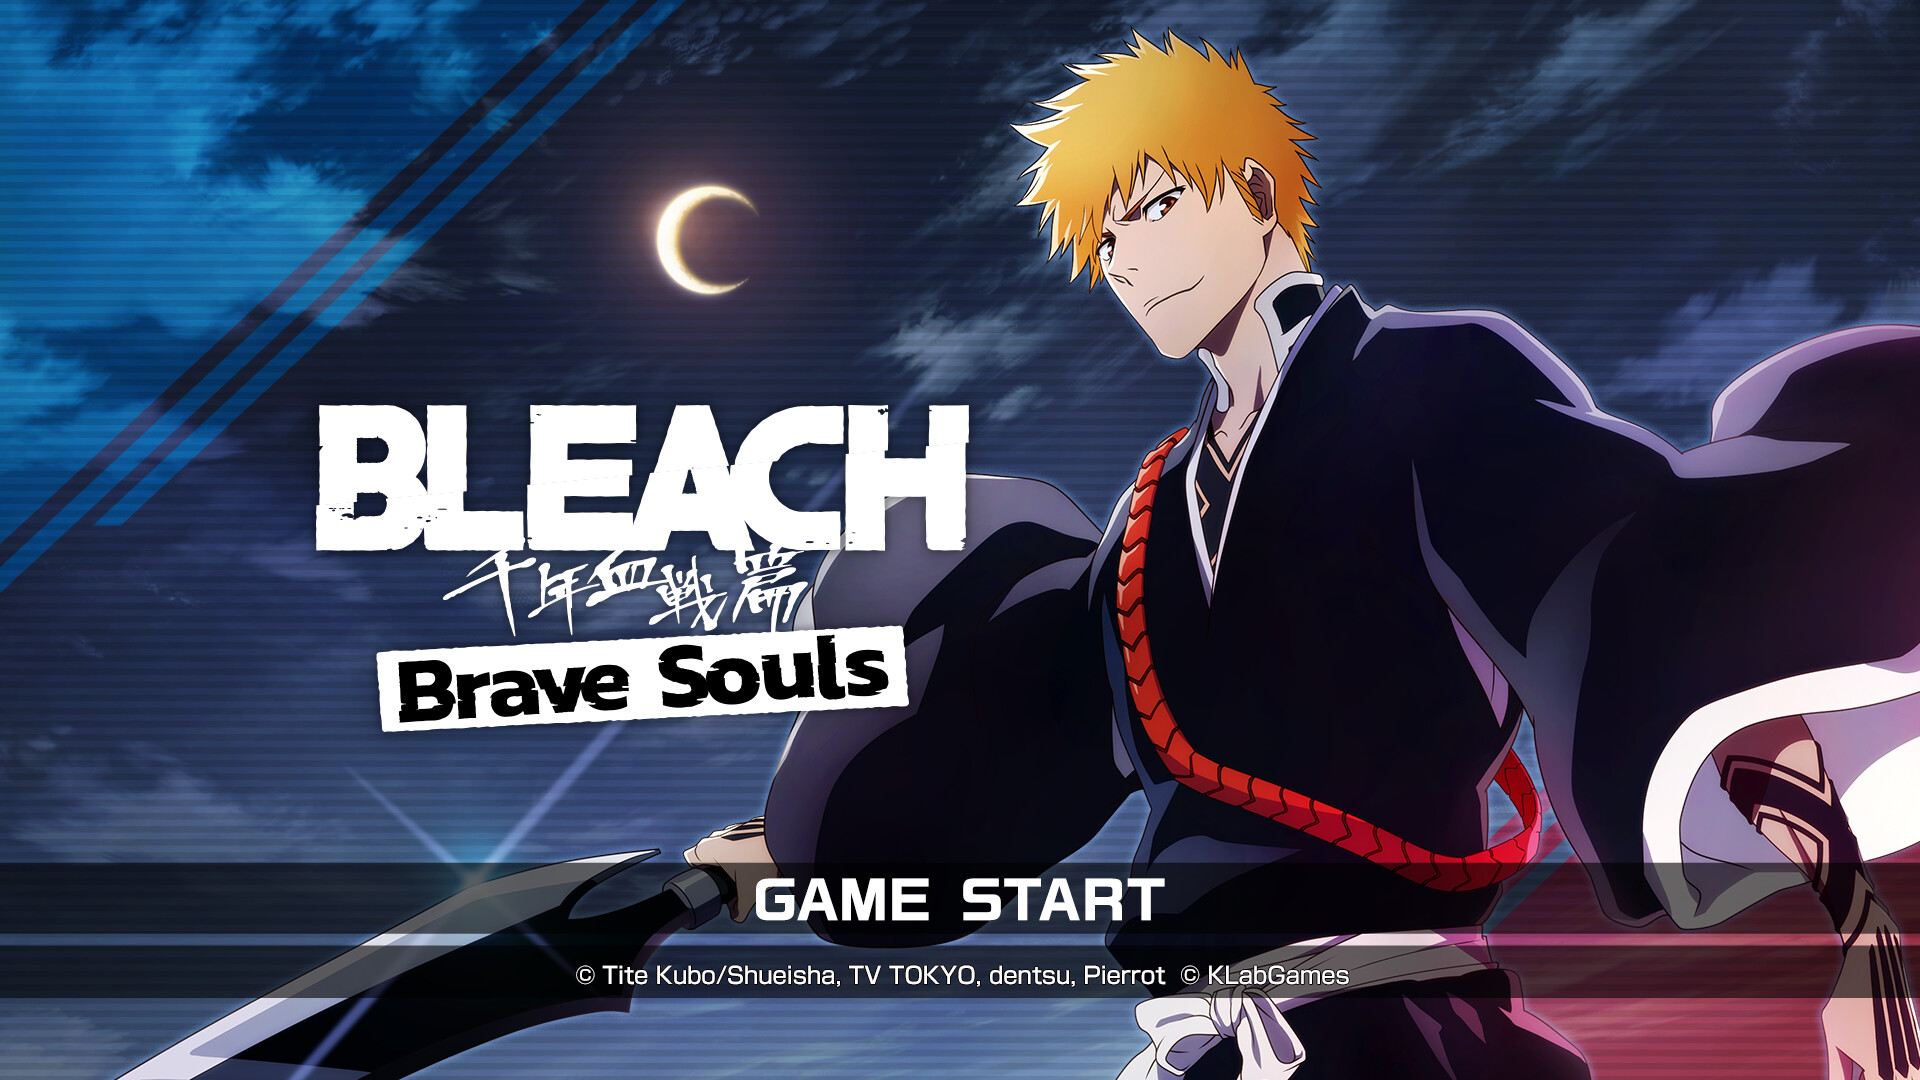 شخصیت ایچیگو کوروساکی در بازی Bleach Brave Souls